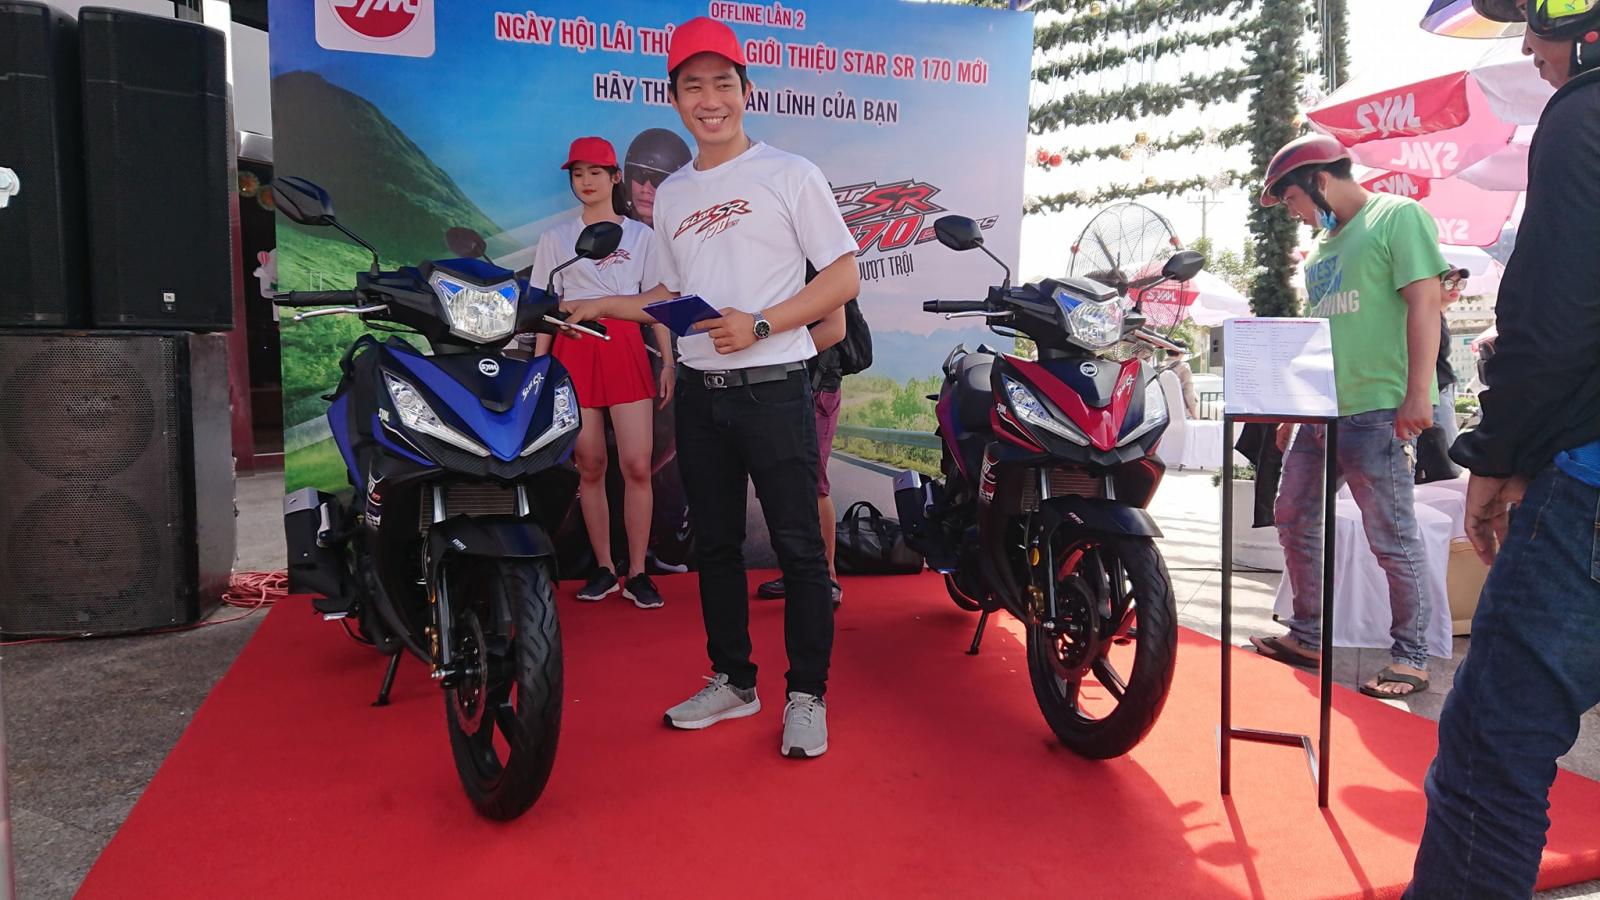 SYM StarSR 170 chính thức ra mắt Việt Nam: Có ABS, giá 49,9 triệu đồng